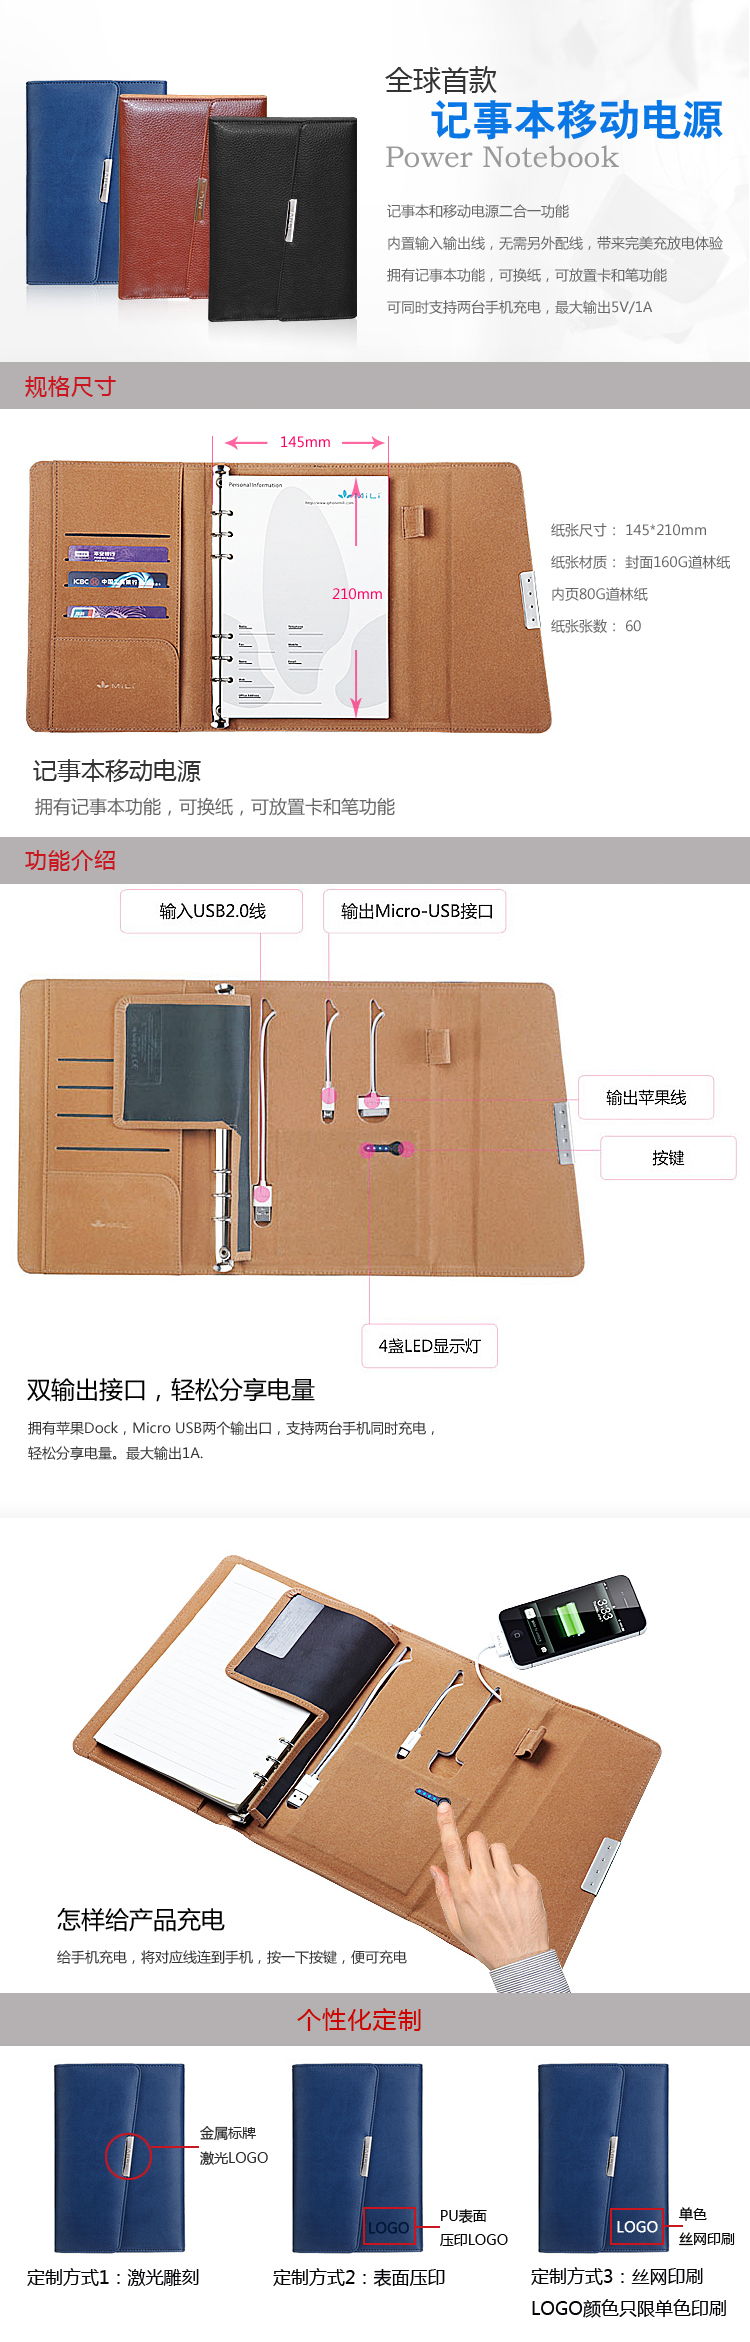 Mili Power Notebook充电宝 苹果 三星 小米多功能记事本移动电源